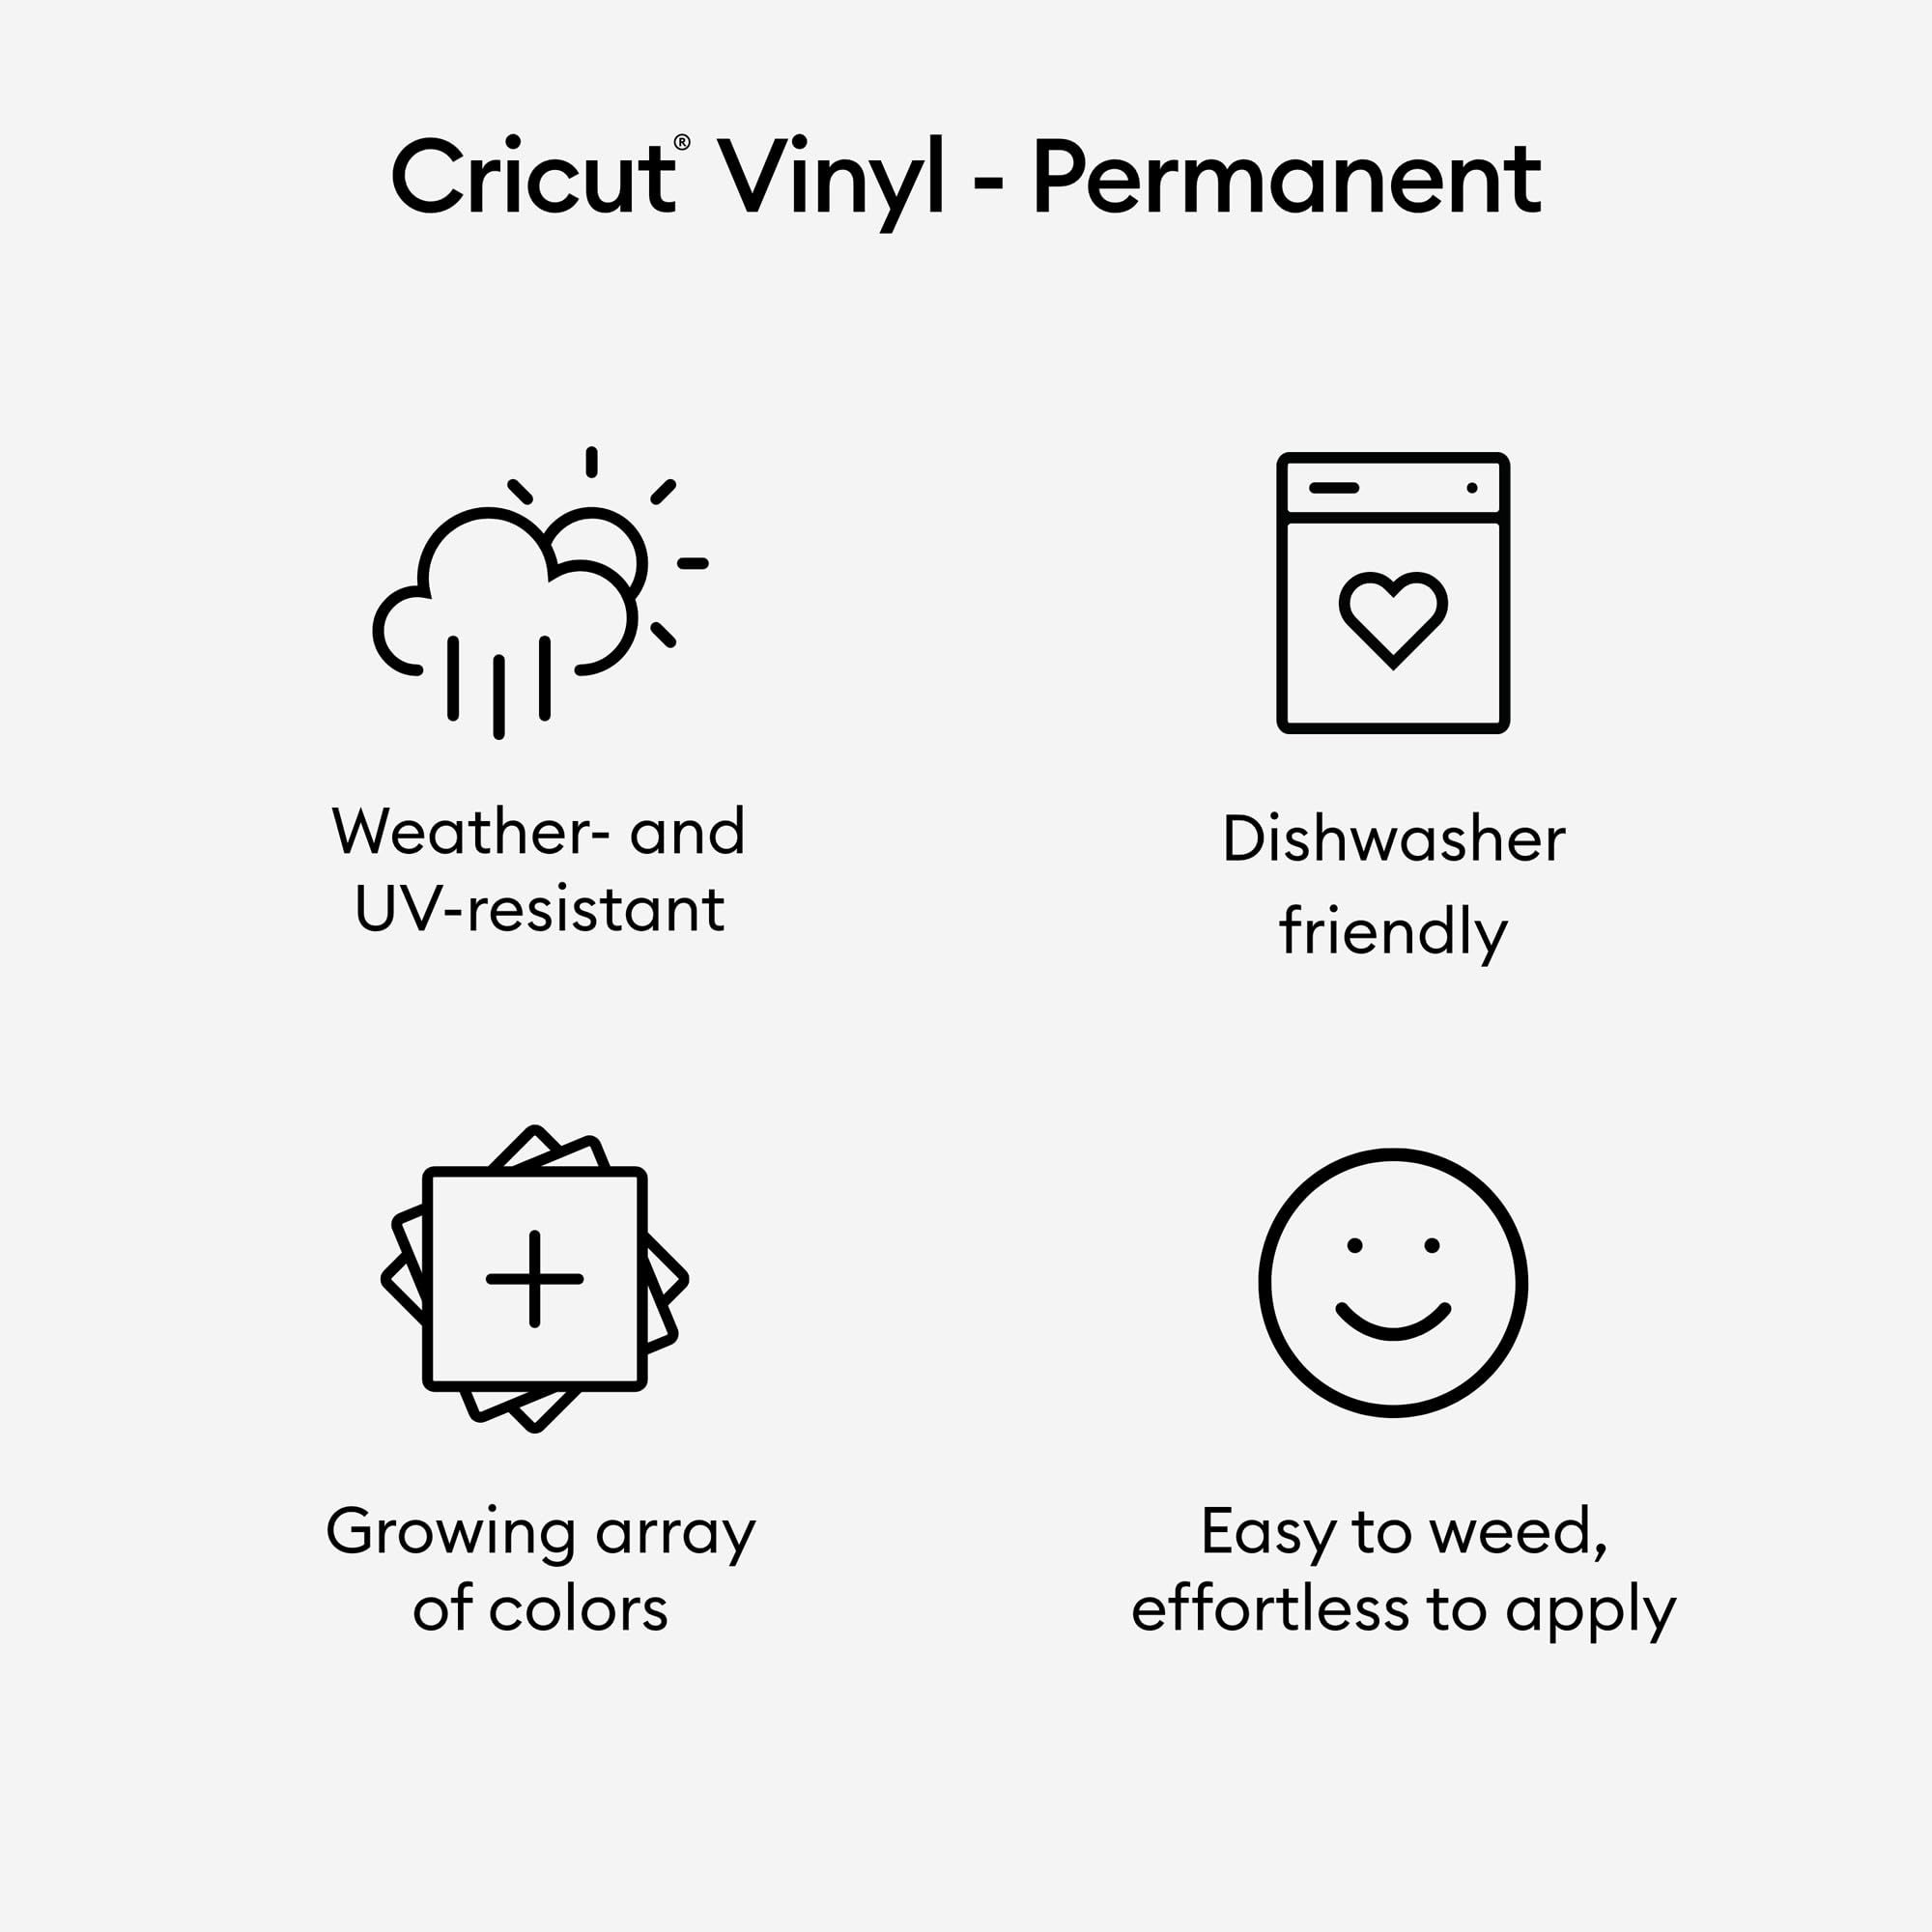 Cricut Premium Permanent Vinyl, 12ft - White (3-Pack of 4ft Rolls), Compatible with Cricut Explore/Maker Machines